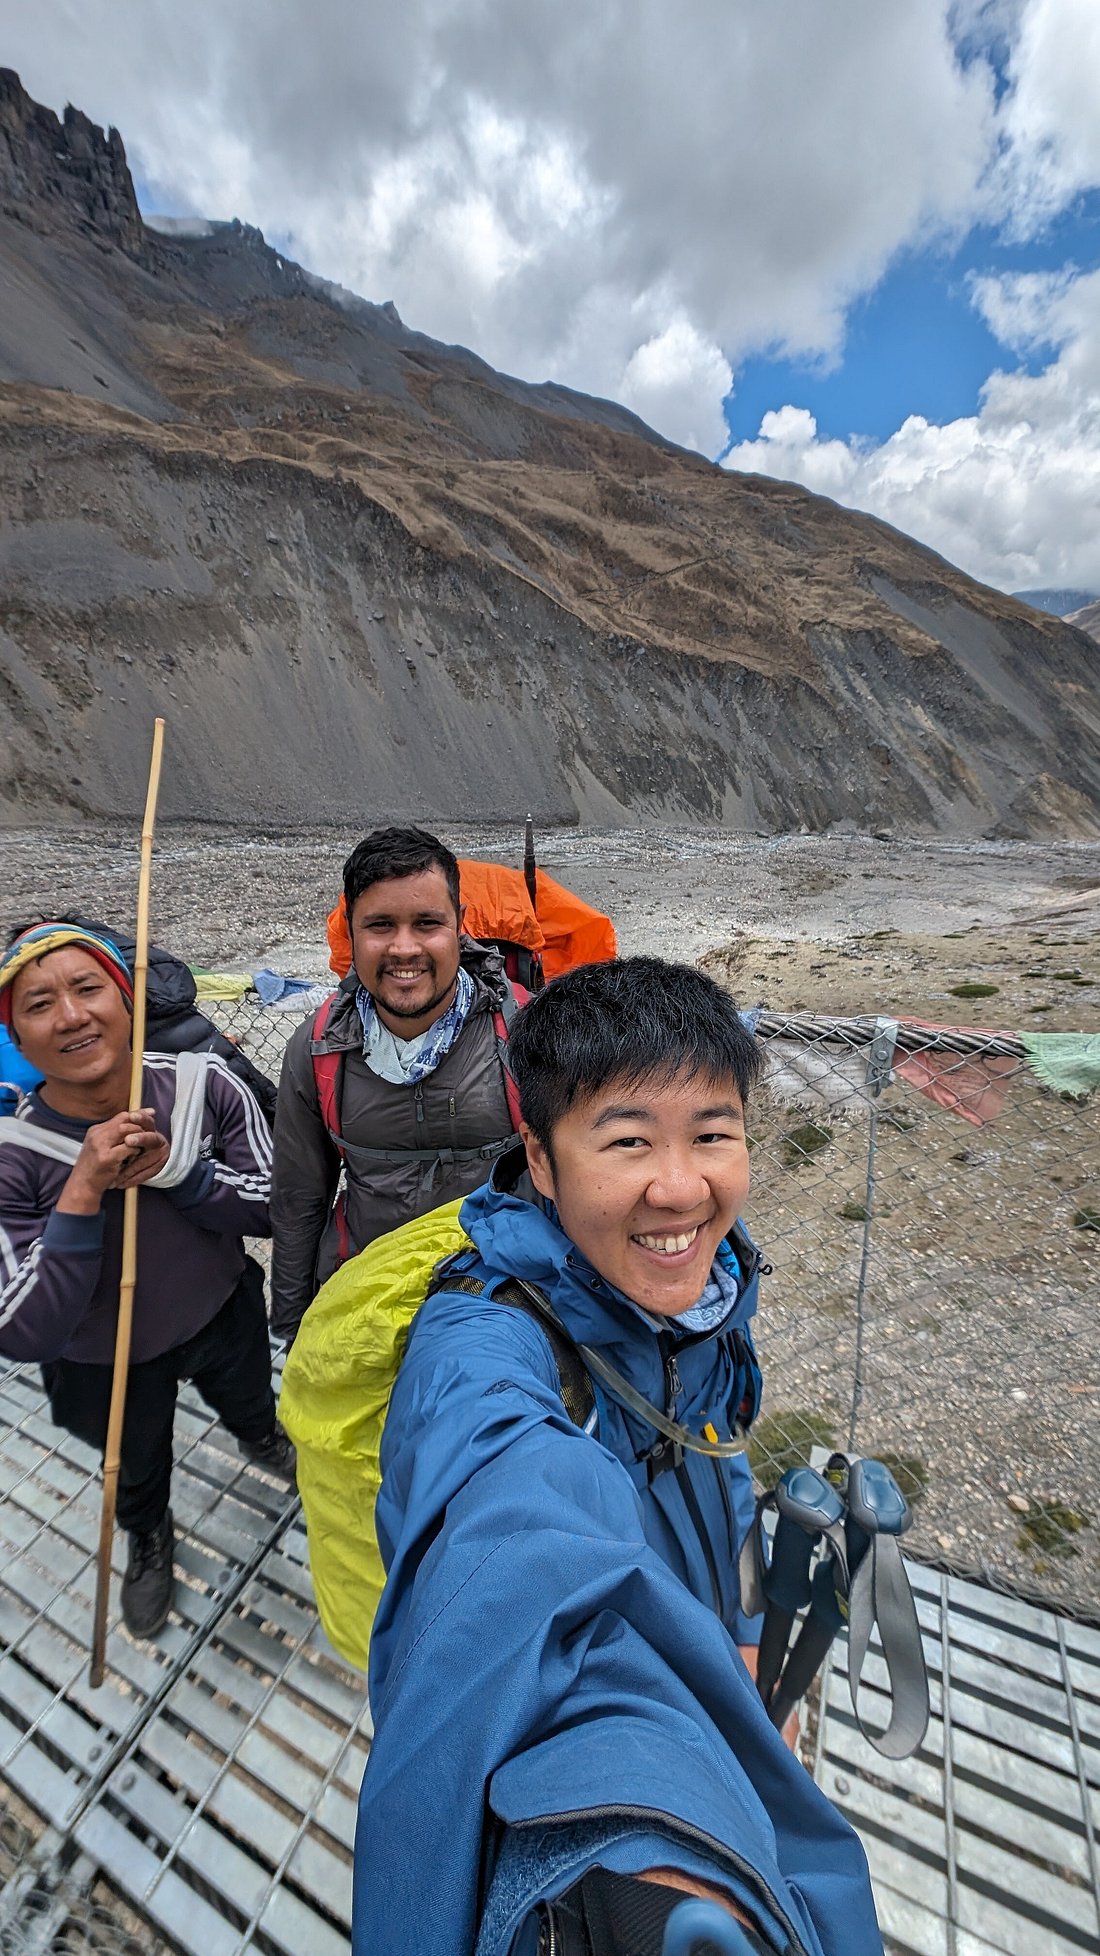 Jose on Trekking nepal